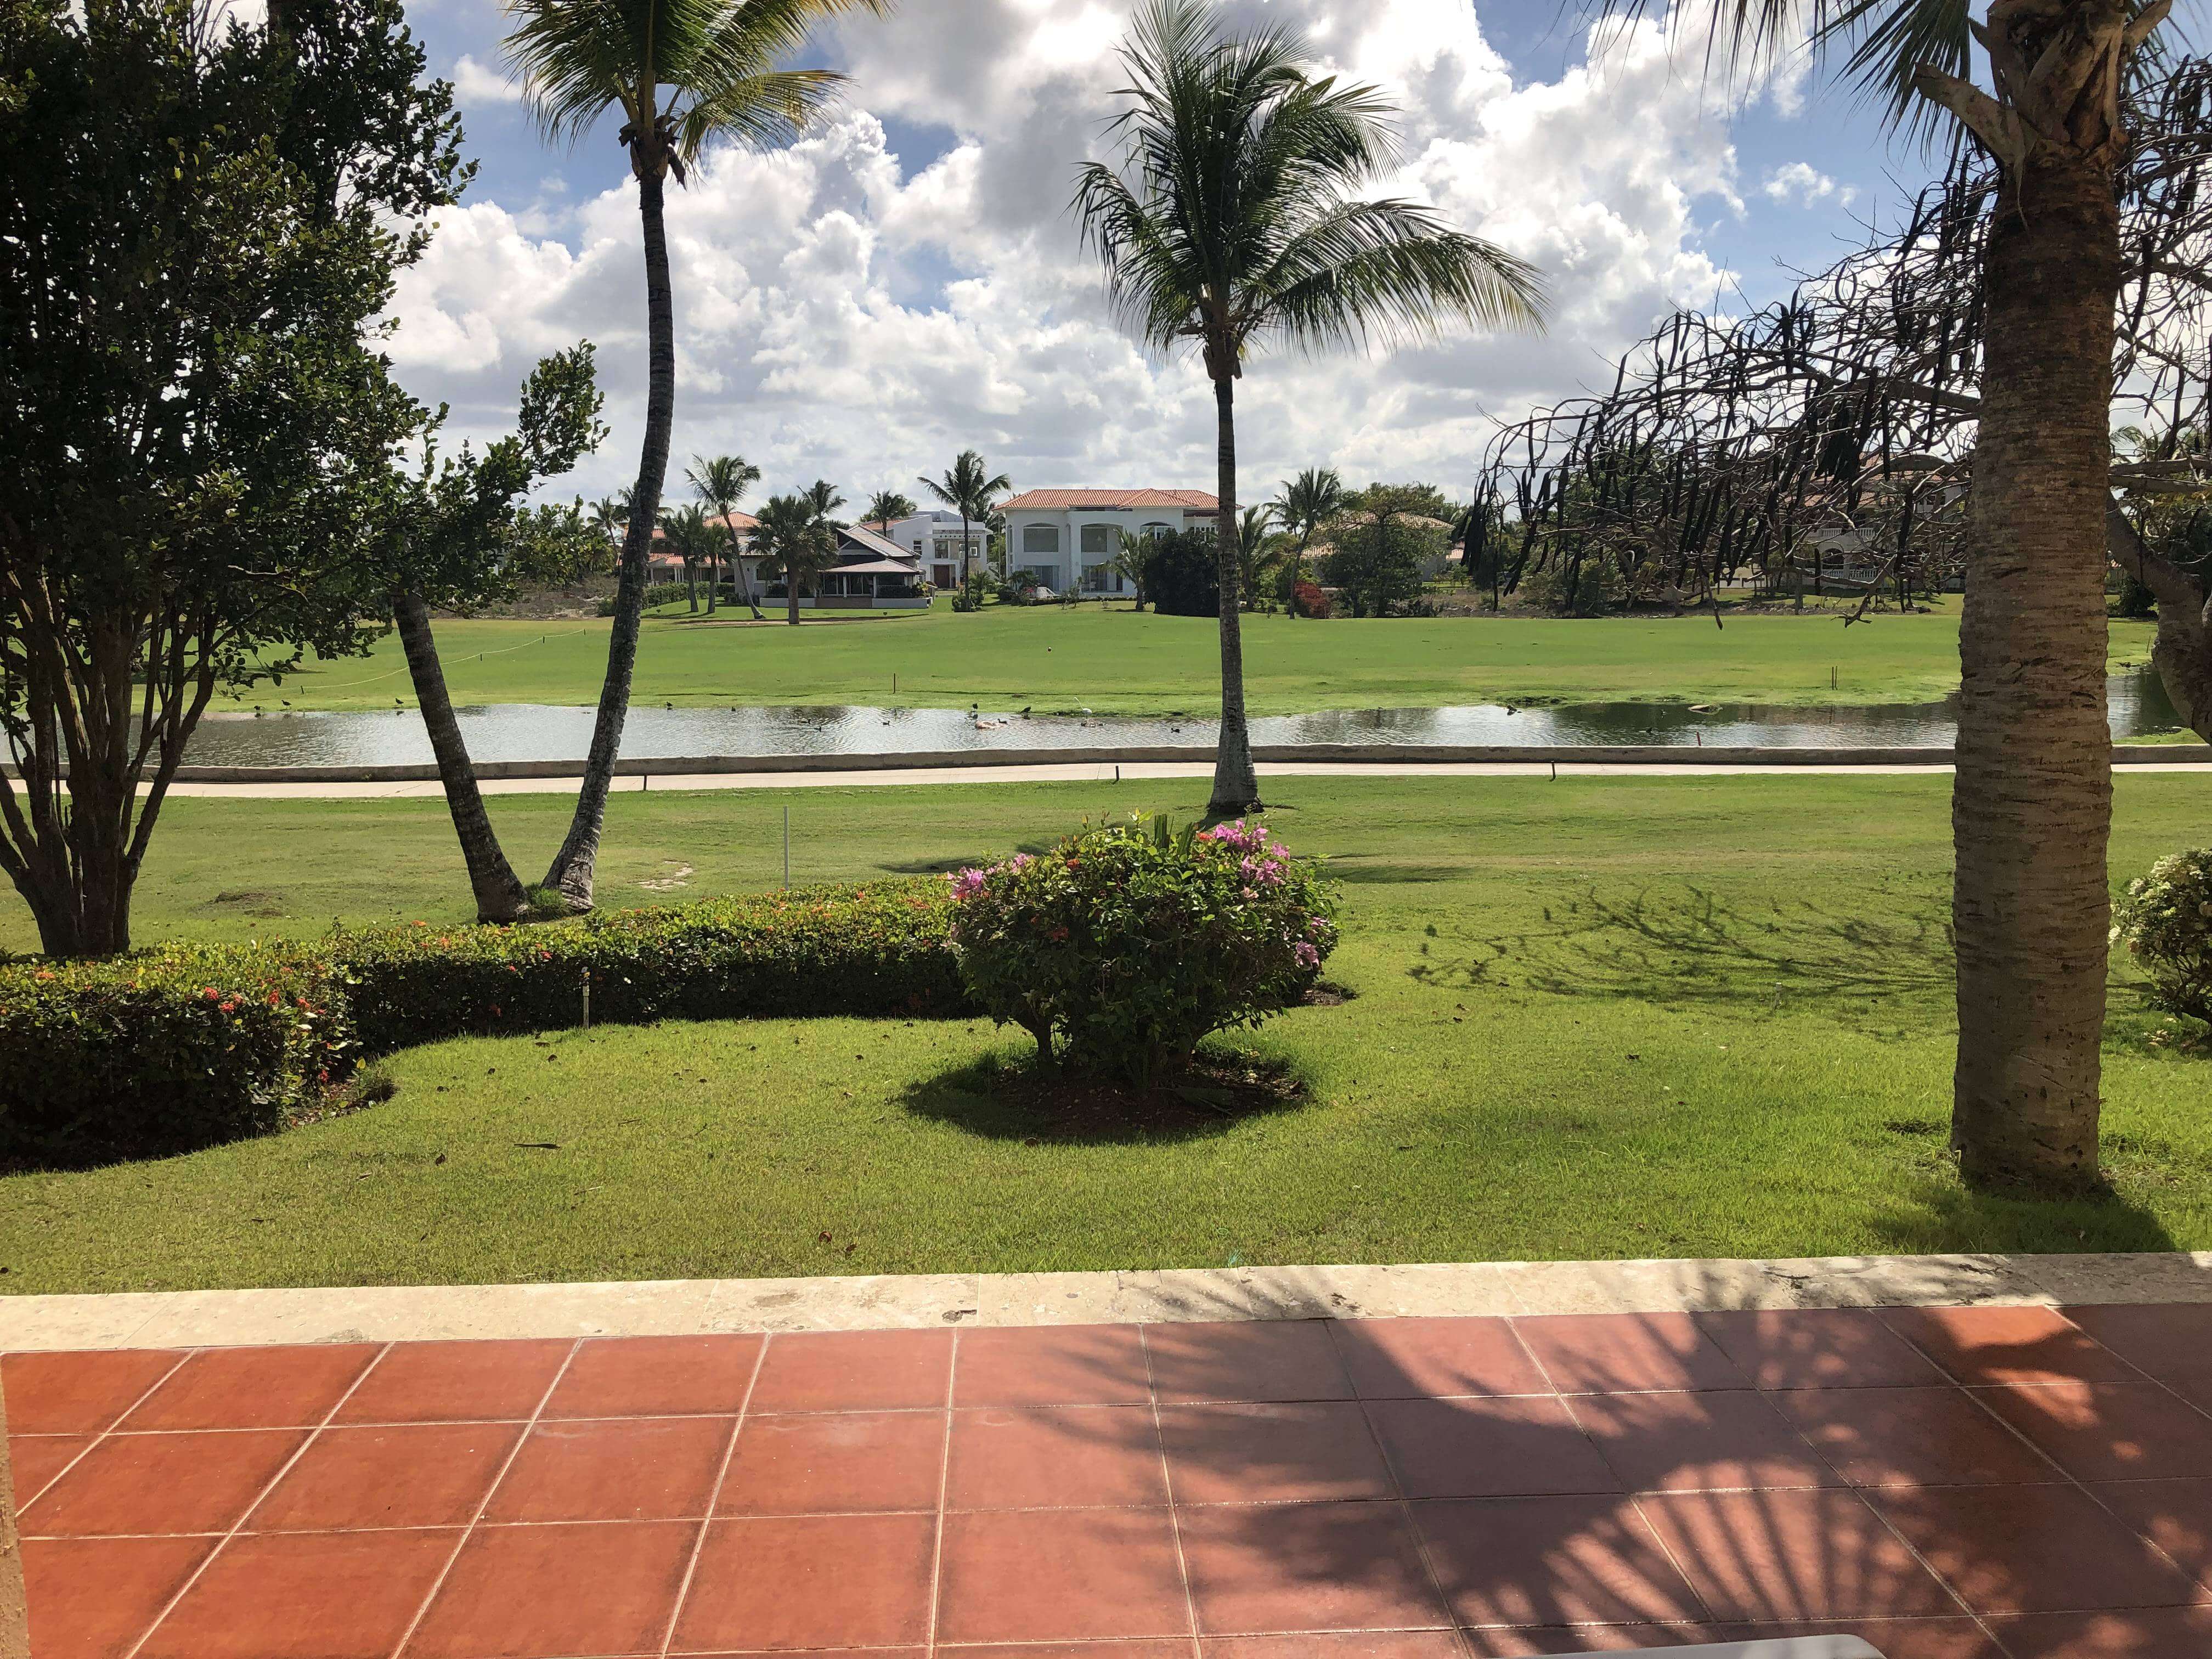 Rentado! Apartamentos  1-2 Dormitorios, Vista Campo De Golf, A 5 Min. De La Playa, Cocotal. Bávaro, República Dominicana